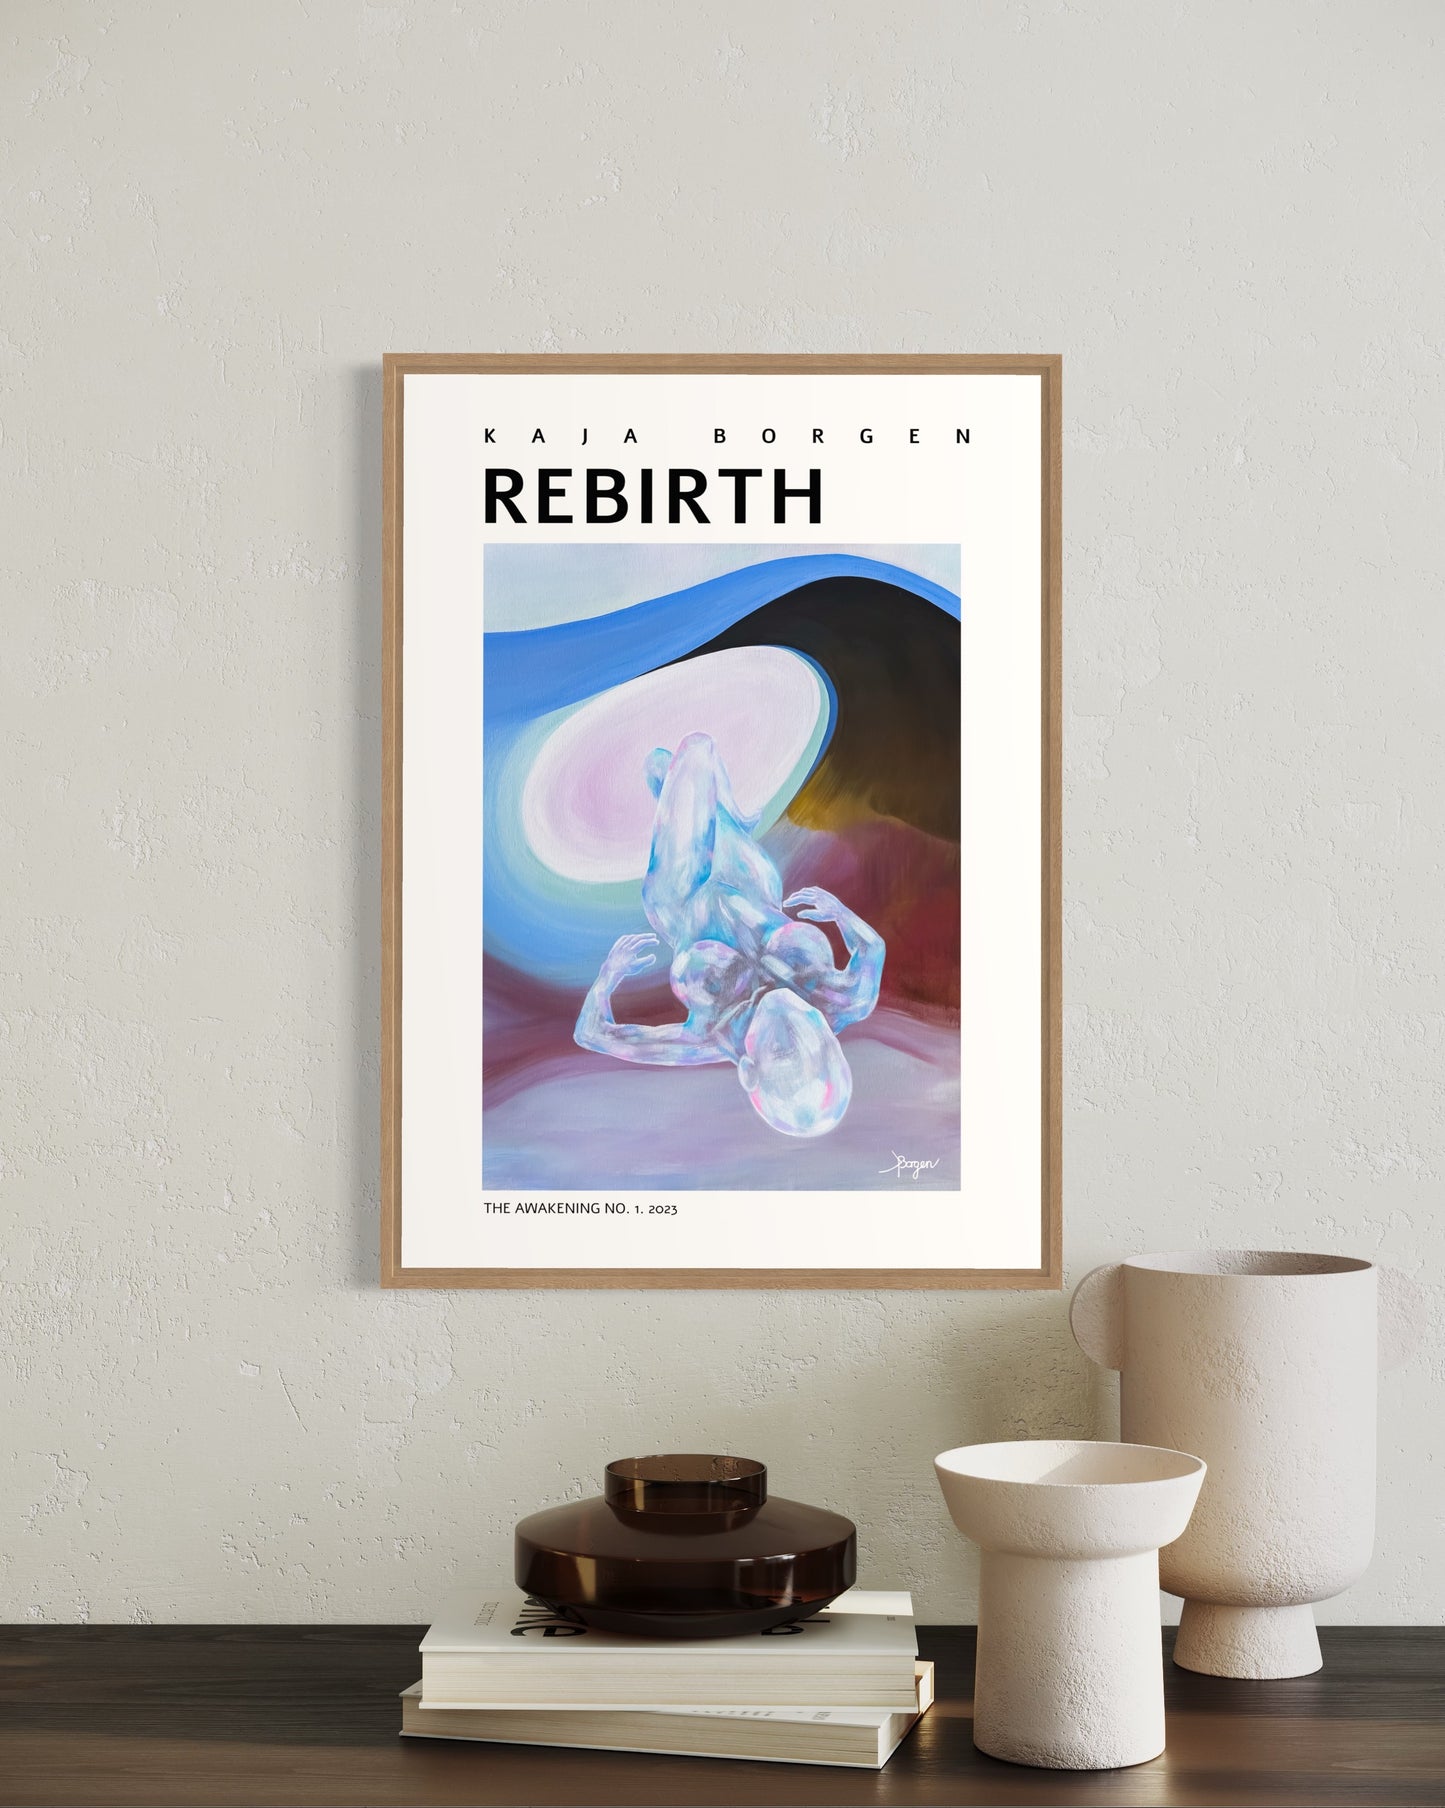 Rebirth, The Awakening no.1